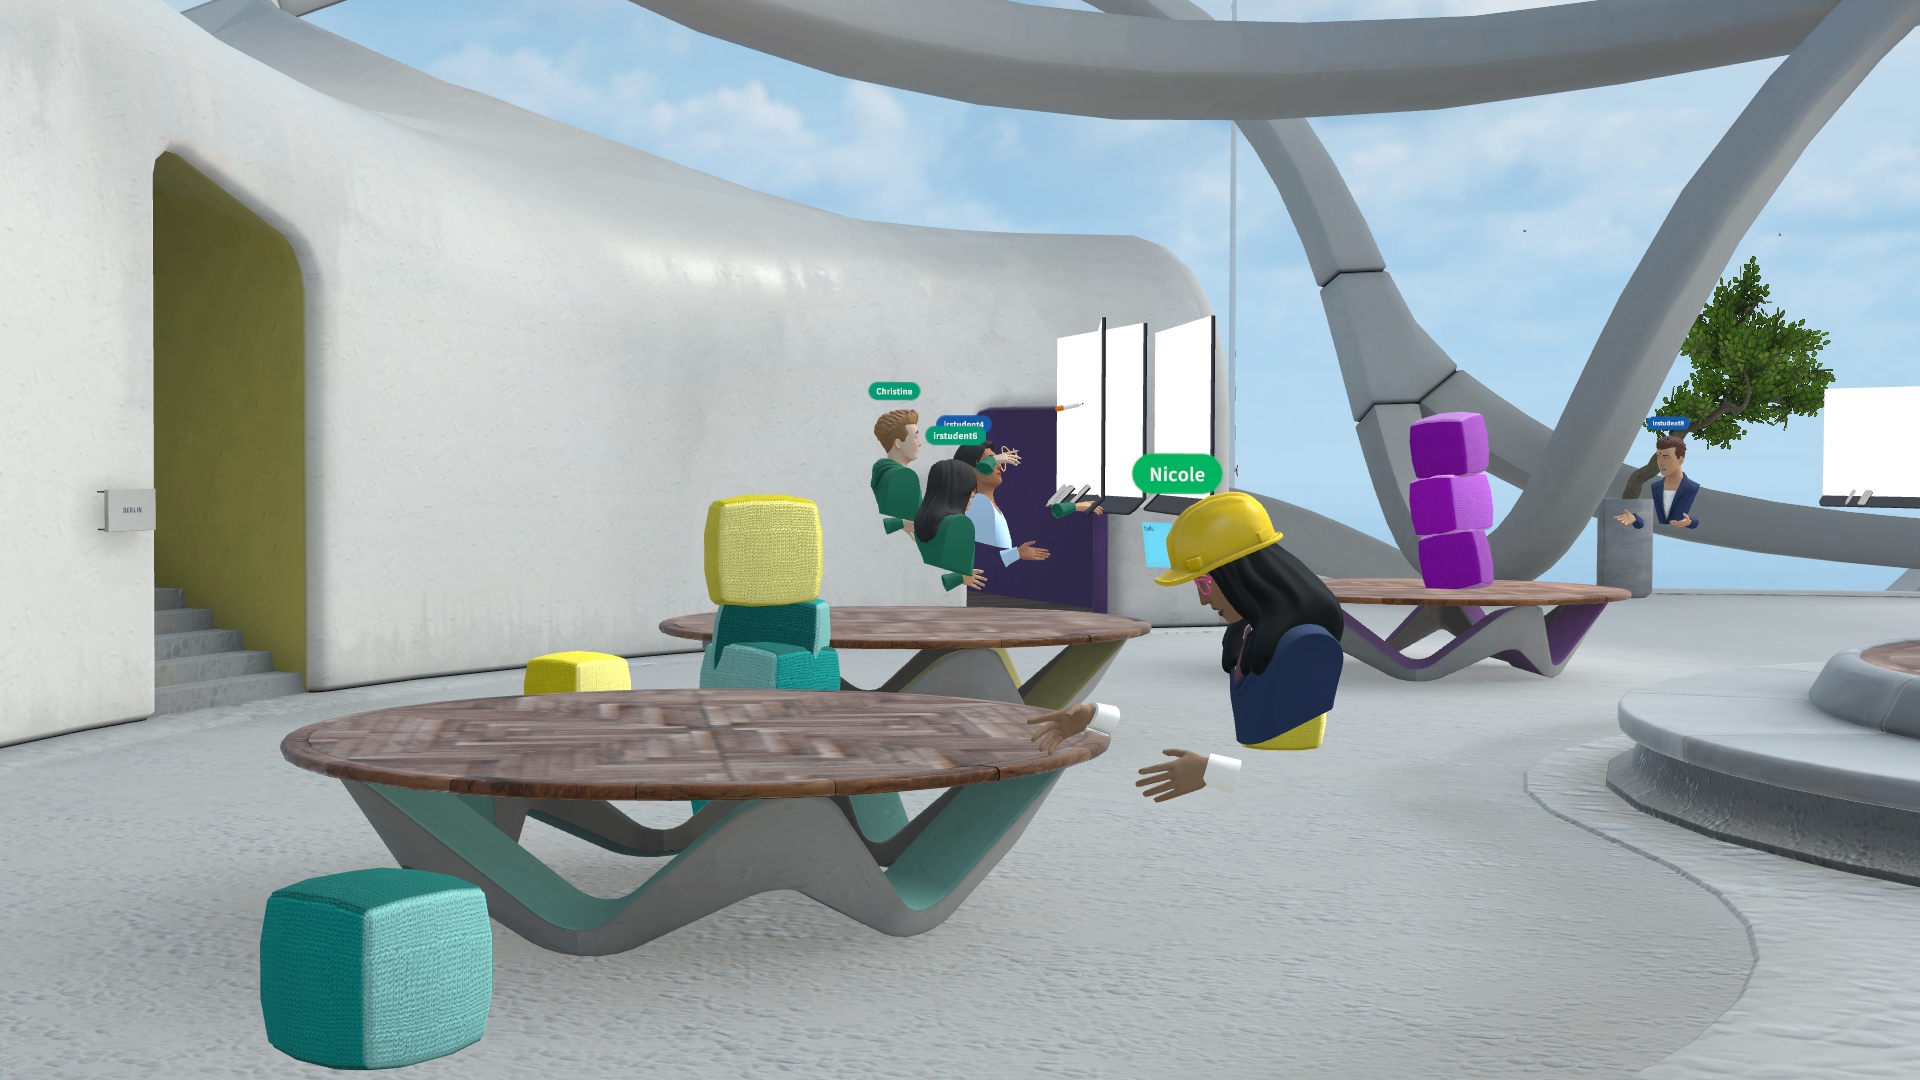 Bild einer virtuellen Szene aus dem Metaverse, in welchem mehrere Personen um einen Tisch versammelt sind.